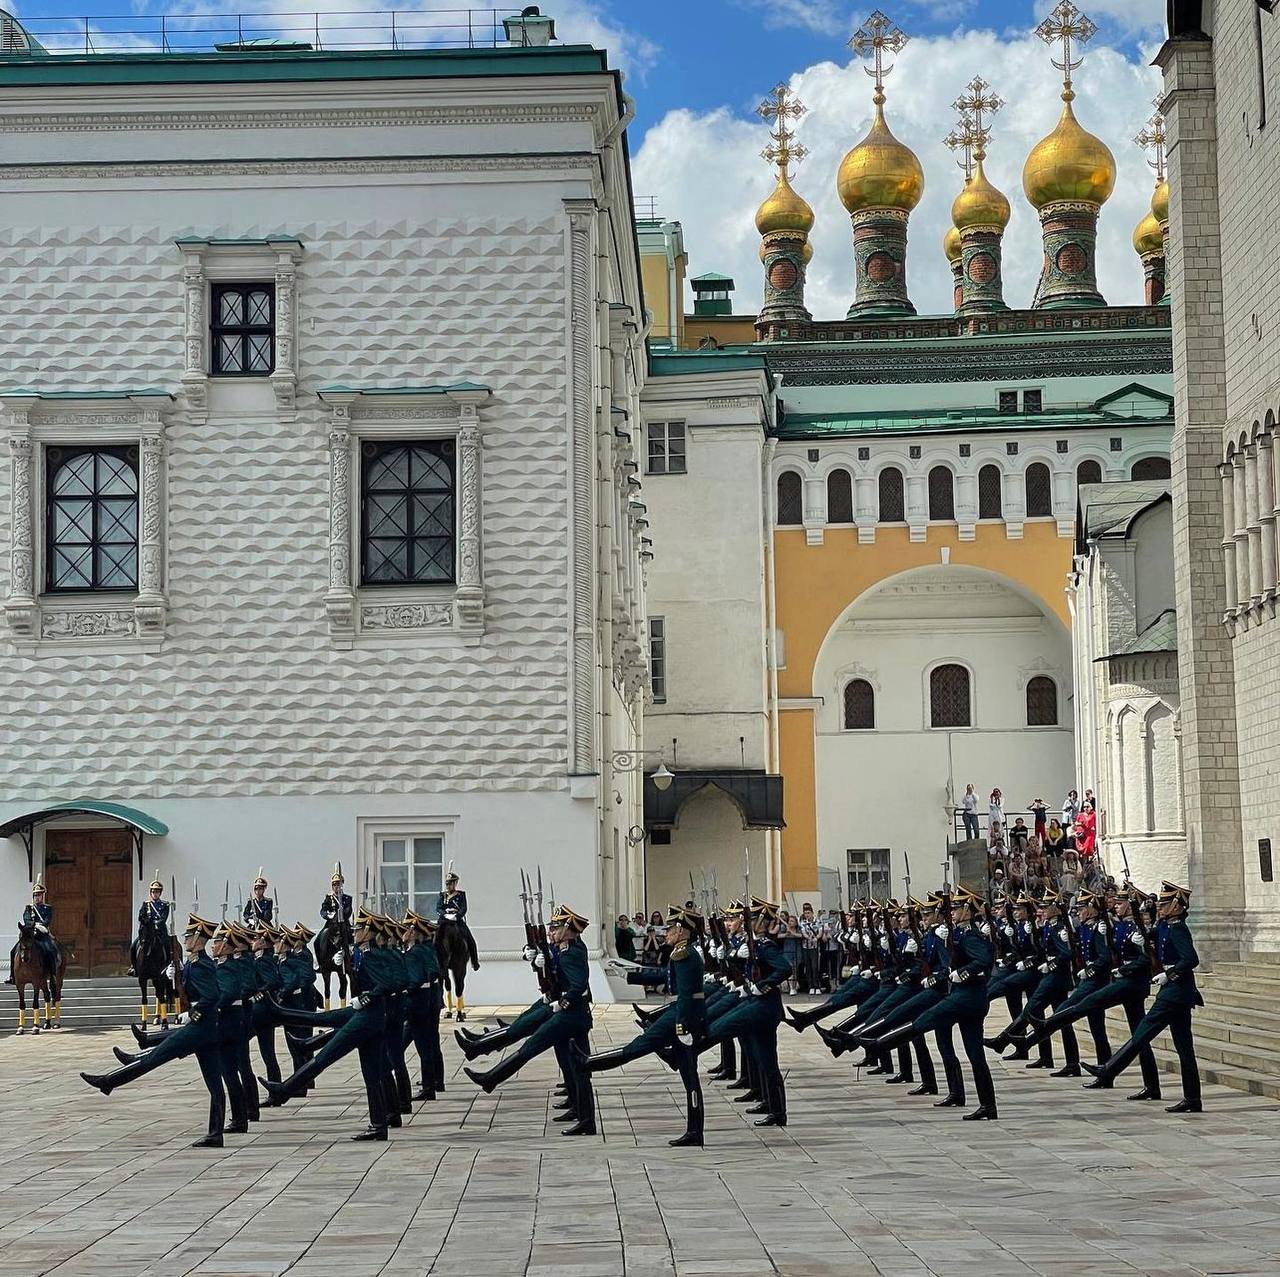 развод пеших и конных караулов президентского полка в кремле